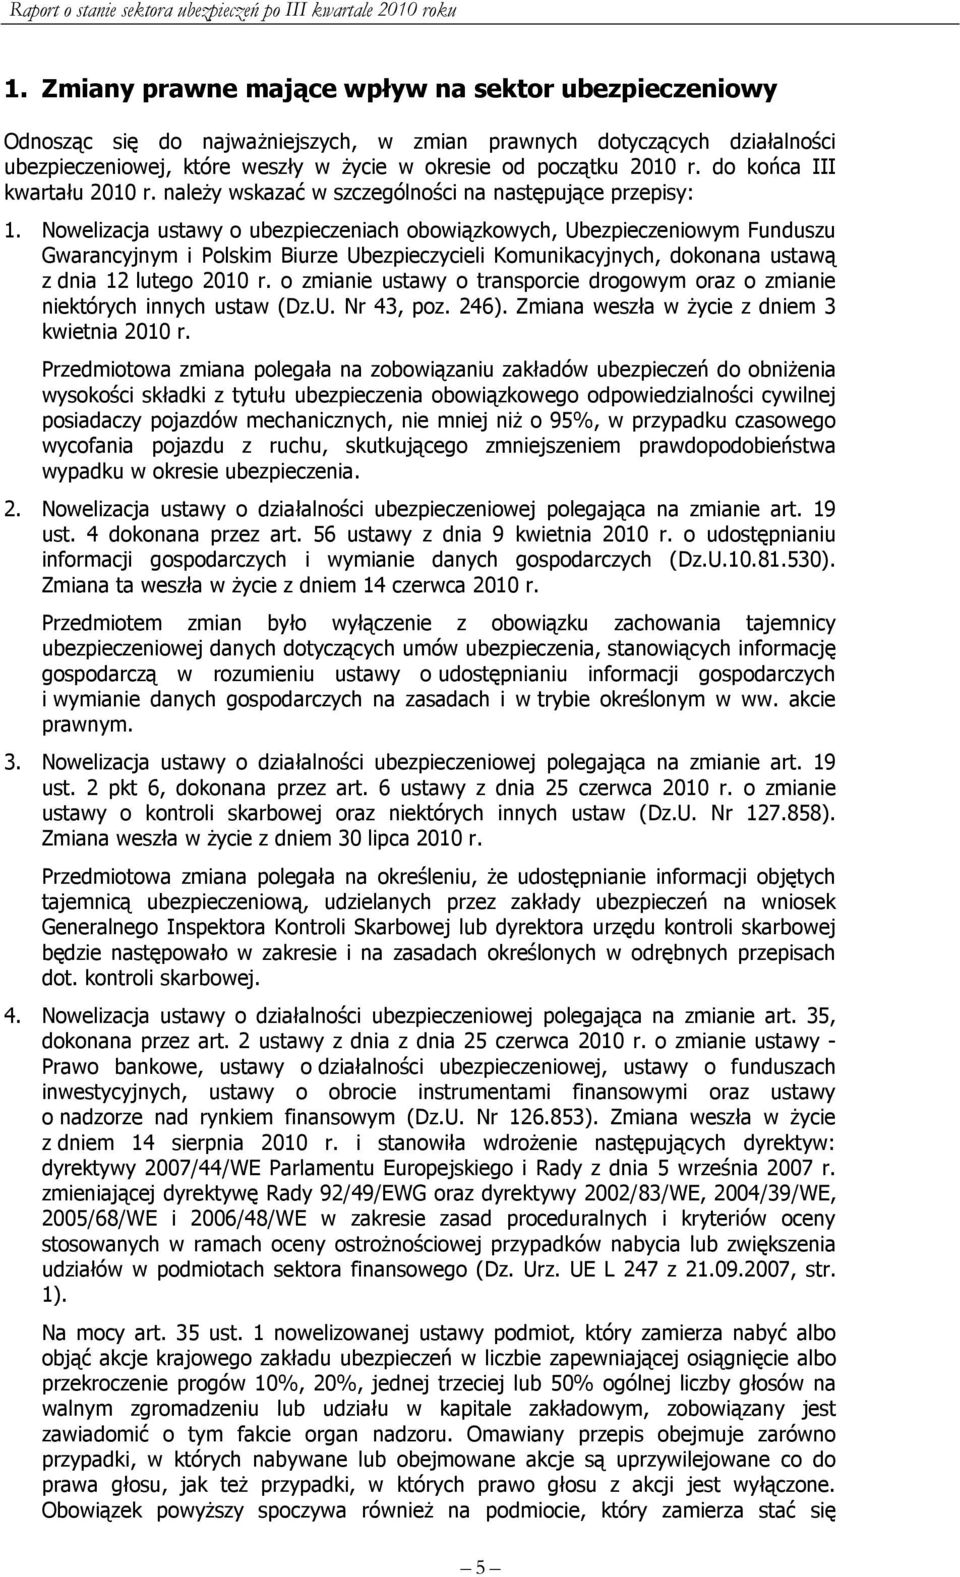 Nowelizacja ustawy o ubezpieczeniach obowiązkowych, Ubezpieczeniowym Funduszu Gwarancyjnym i Polskim Biurze Ubezpieczycieli Komunikacyjnych, dokonana ustawą z dnia 12 lutego 2010 r.